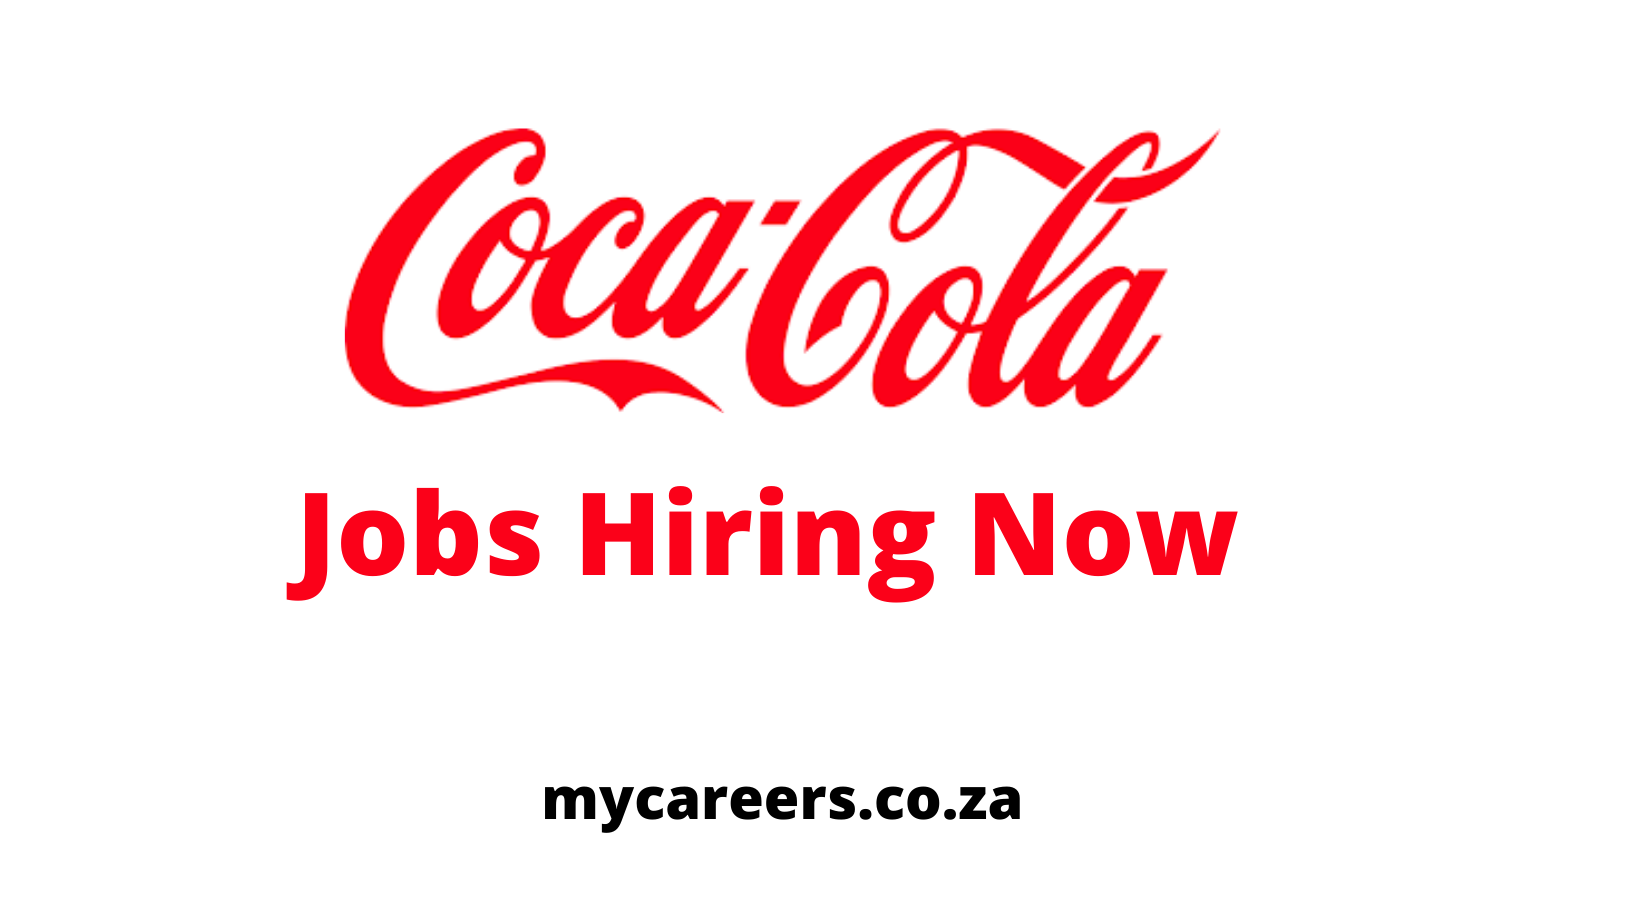 Coca Cola Ksa Jobs